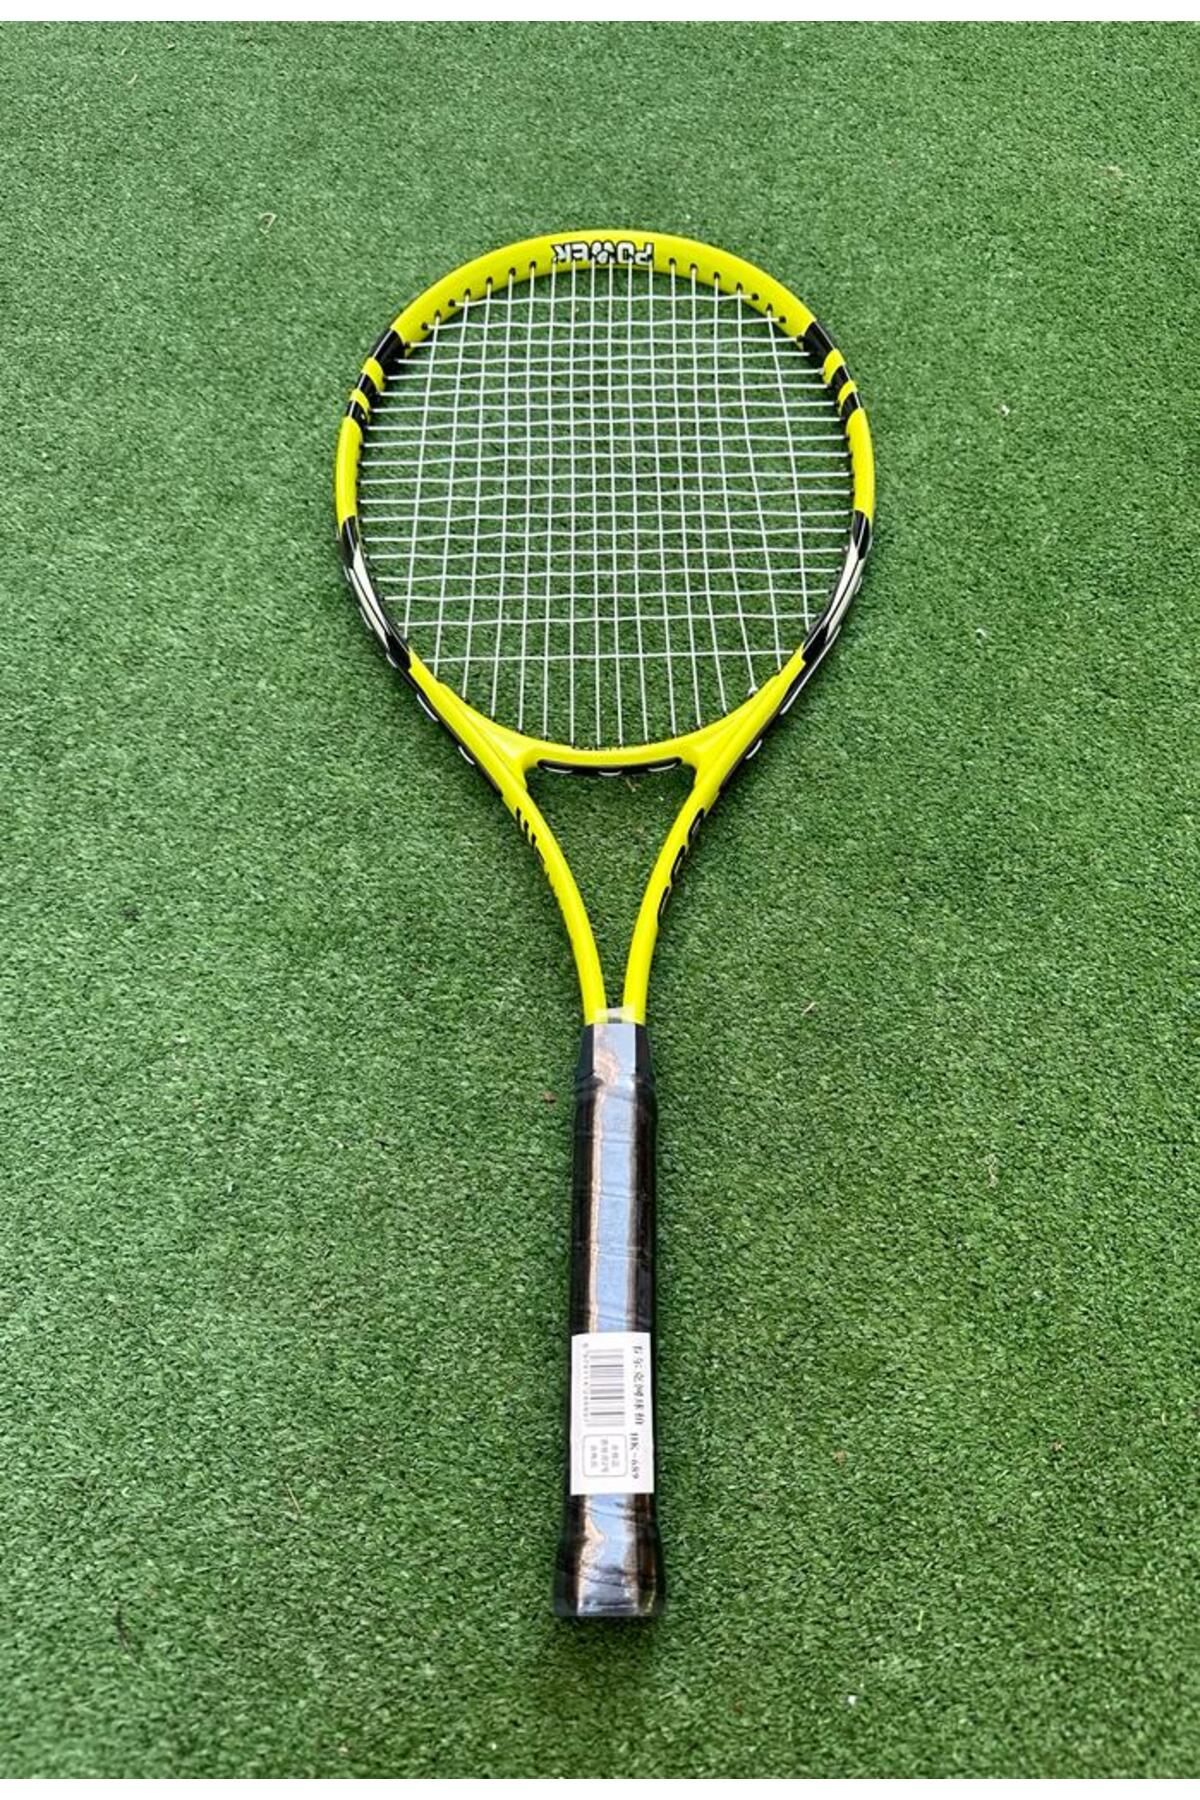 WELLCOLD 27 İnç Yetişkin Tenis Raketi Ve Deluxe Tenis Çantası (L2 Grip)